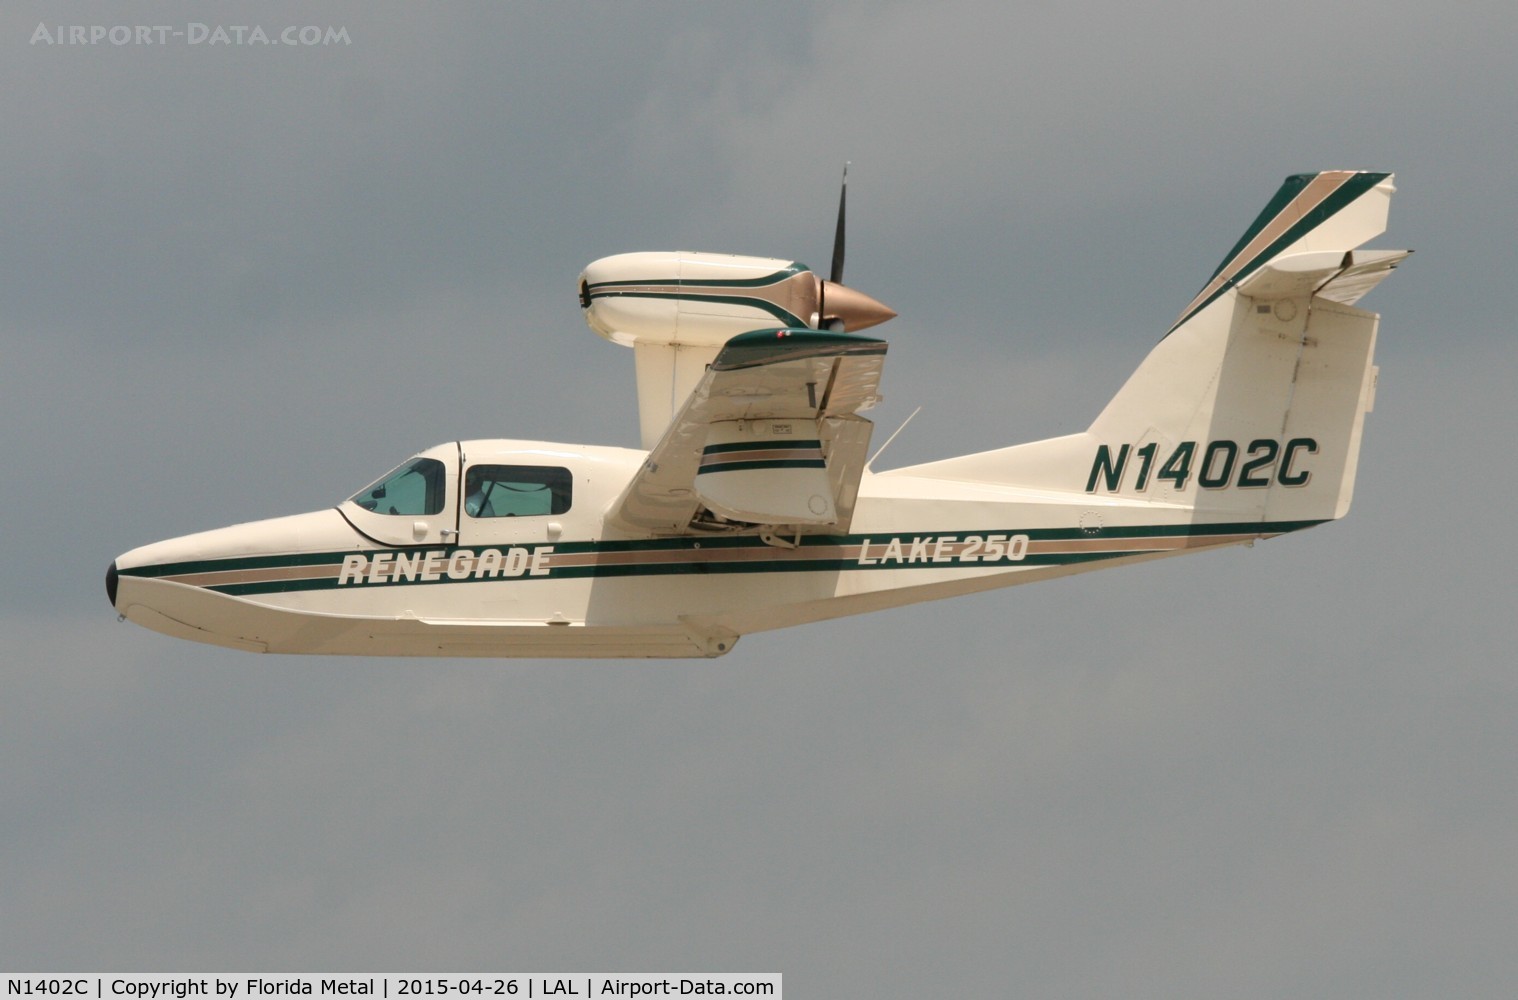 N1402C, 1984 Aerofab Inc Lake LA-4-250 C/N 15, Lake LA-250